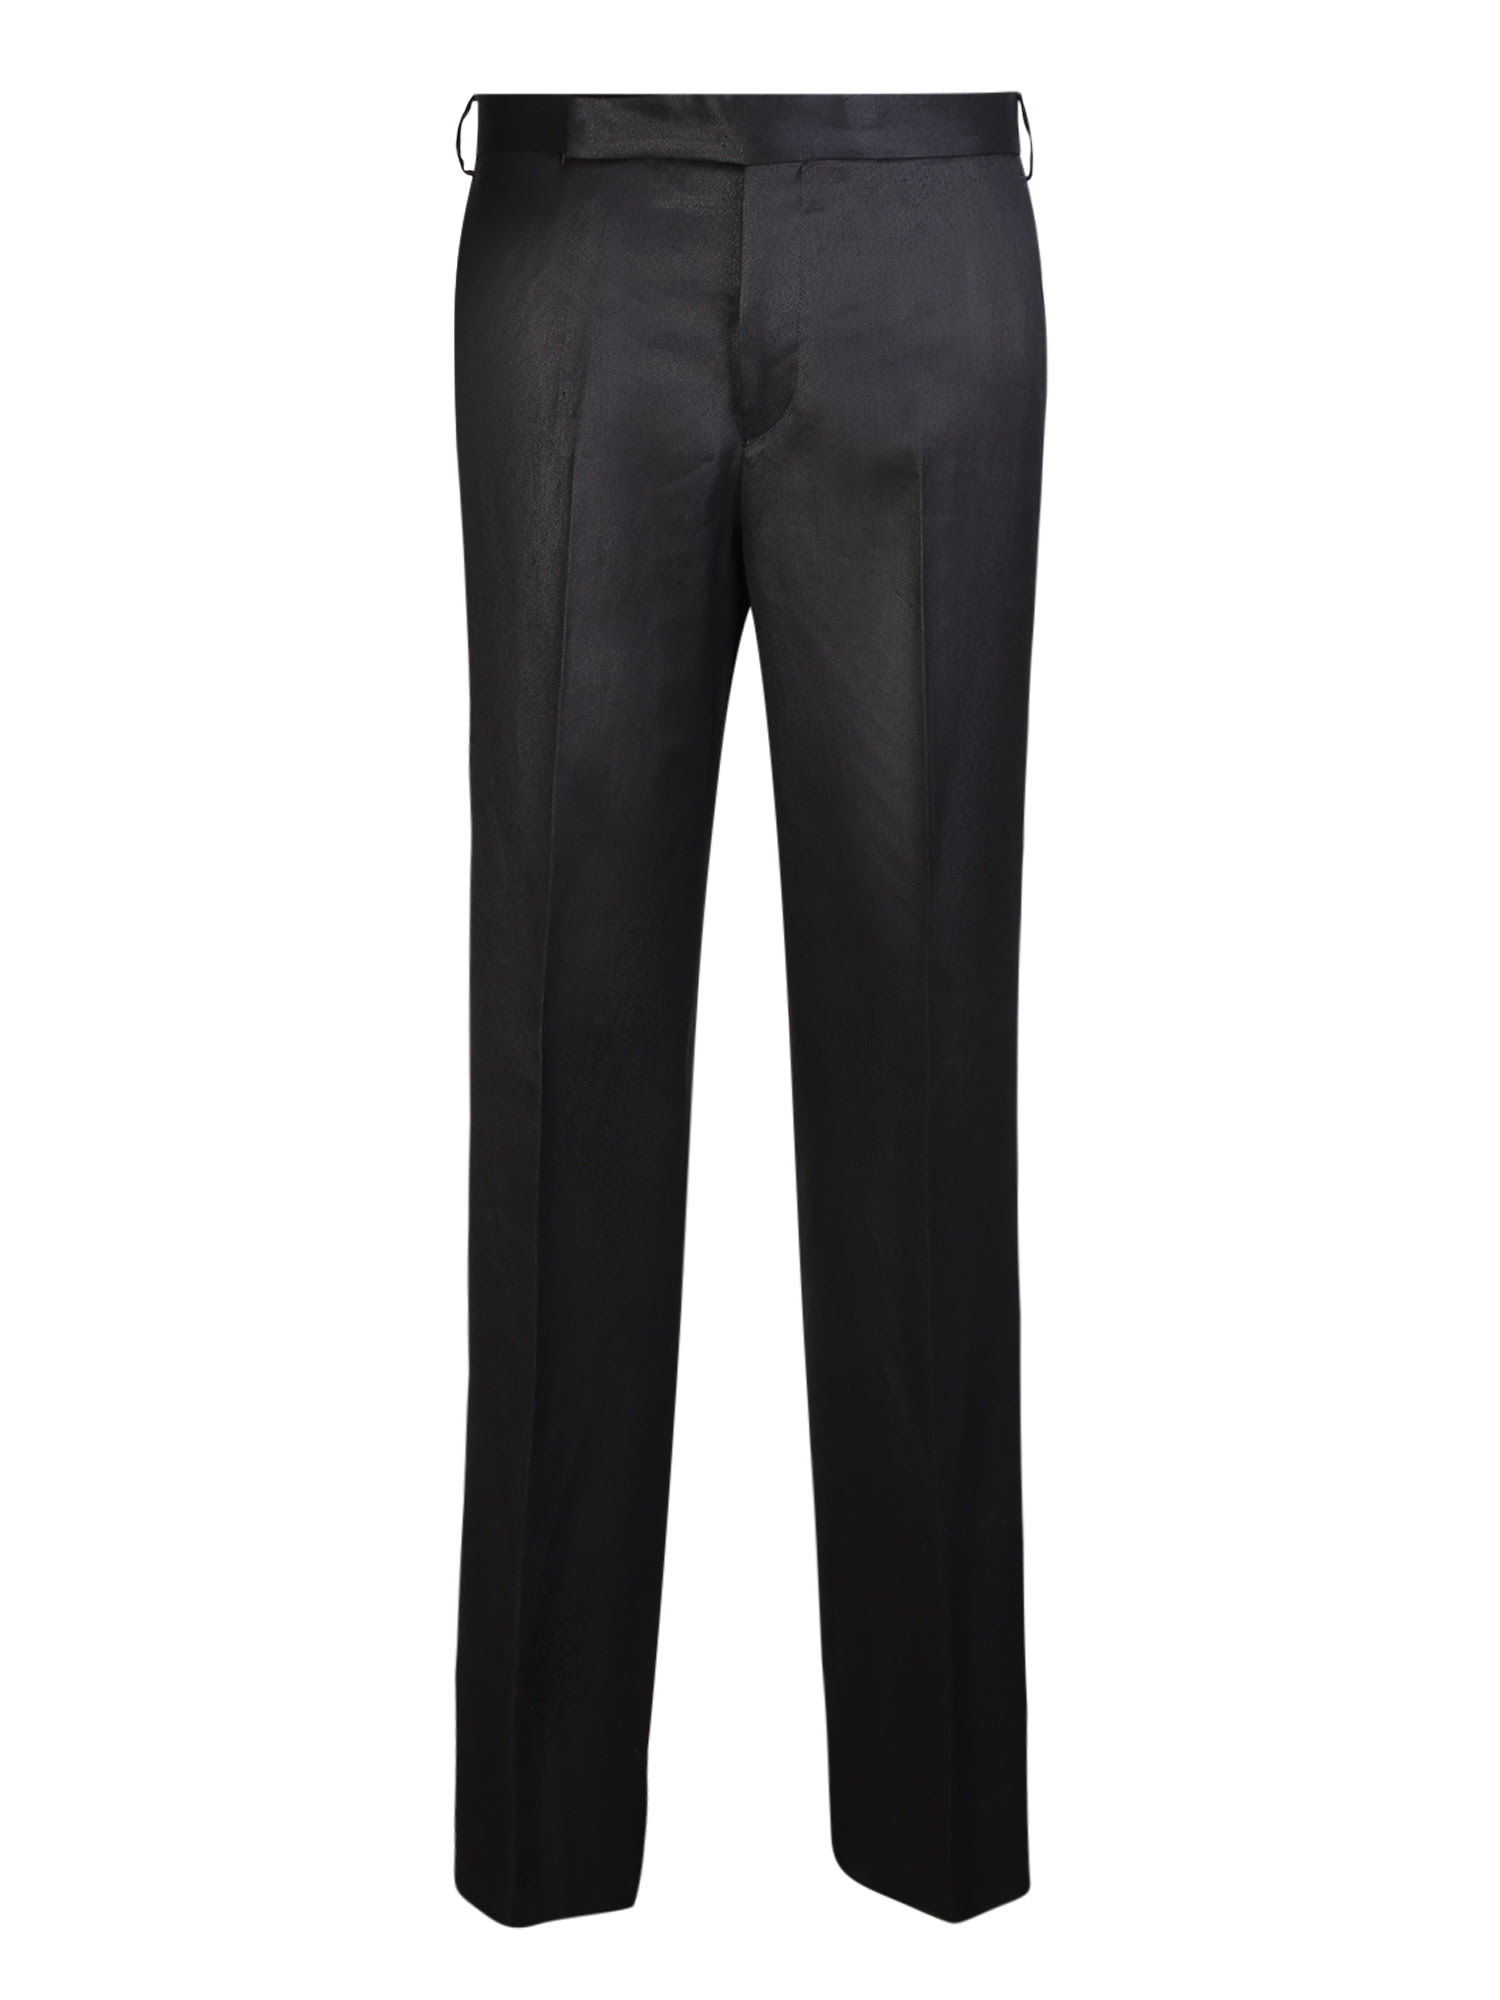 Shop Lardini Linen Black Trousers